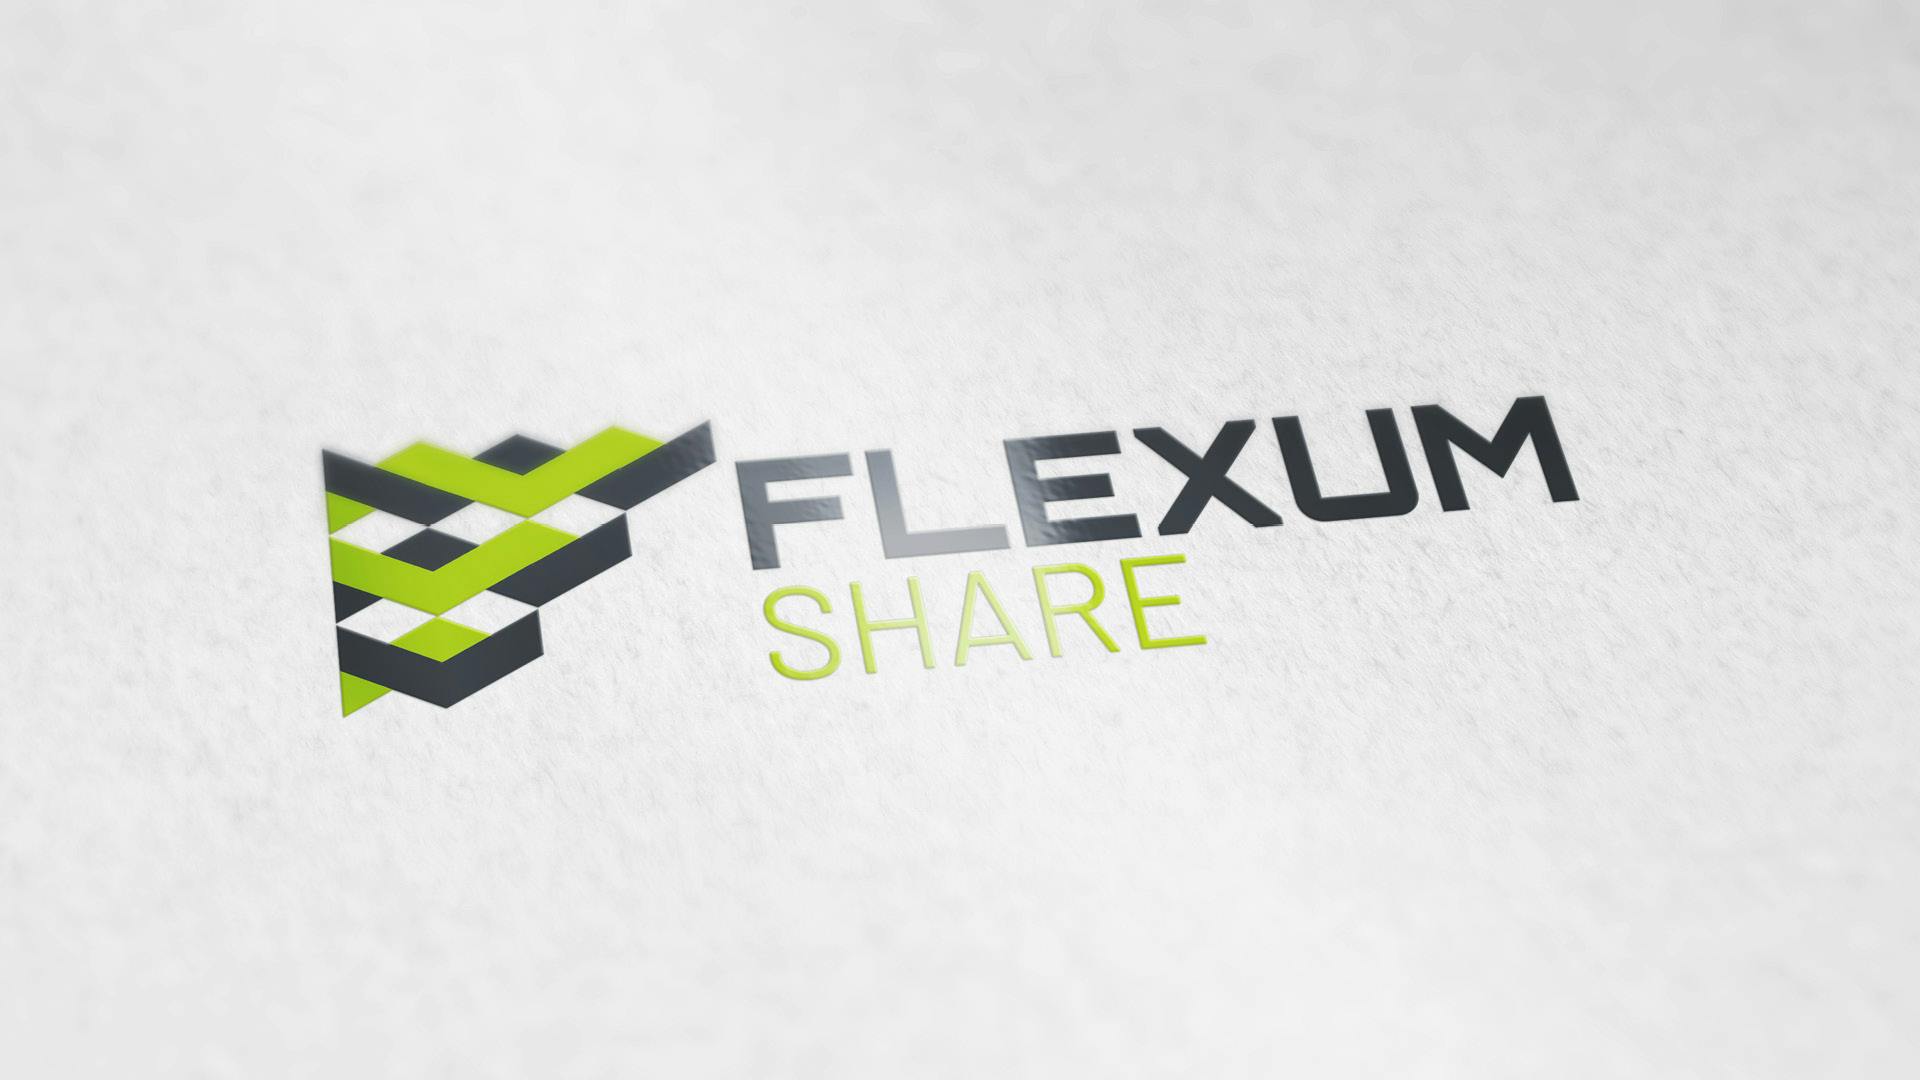 Flexum Share